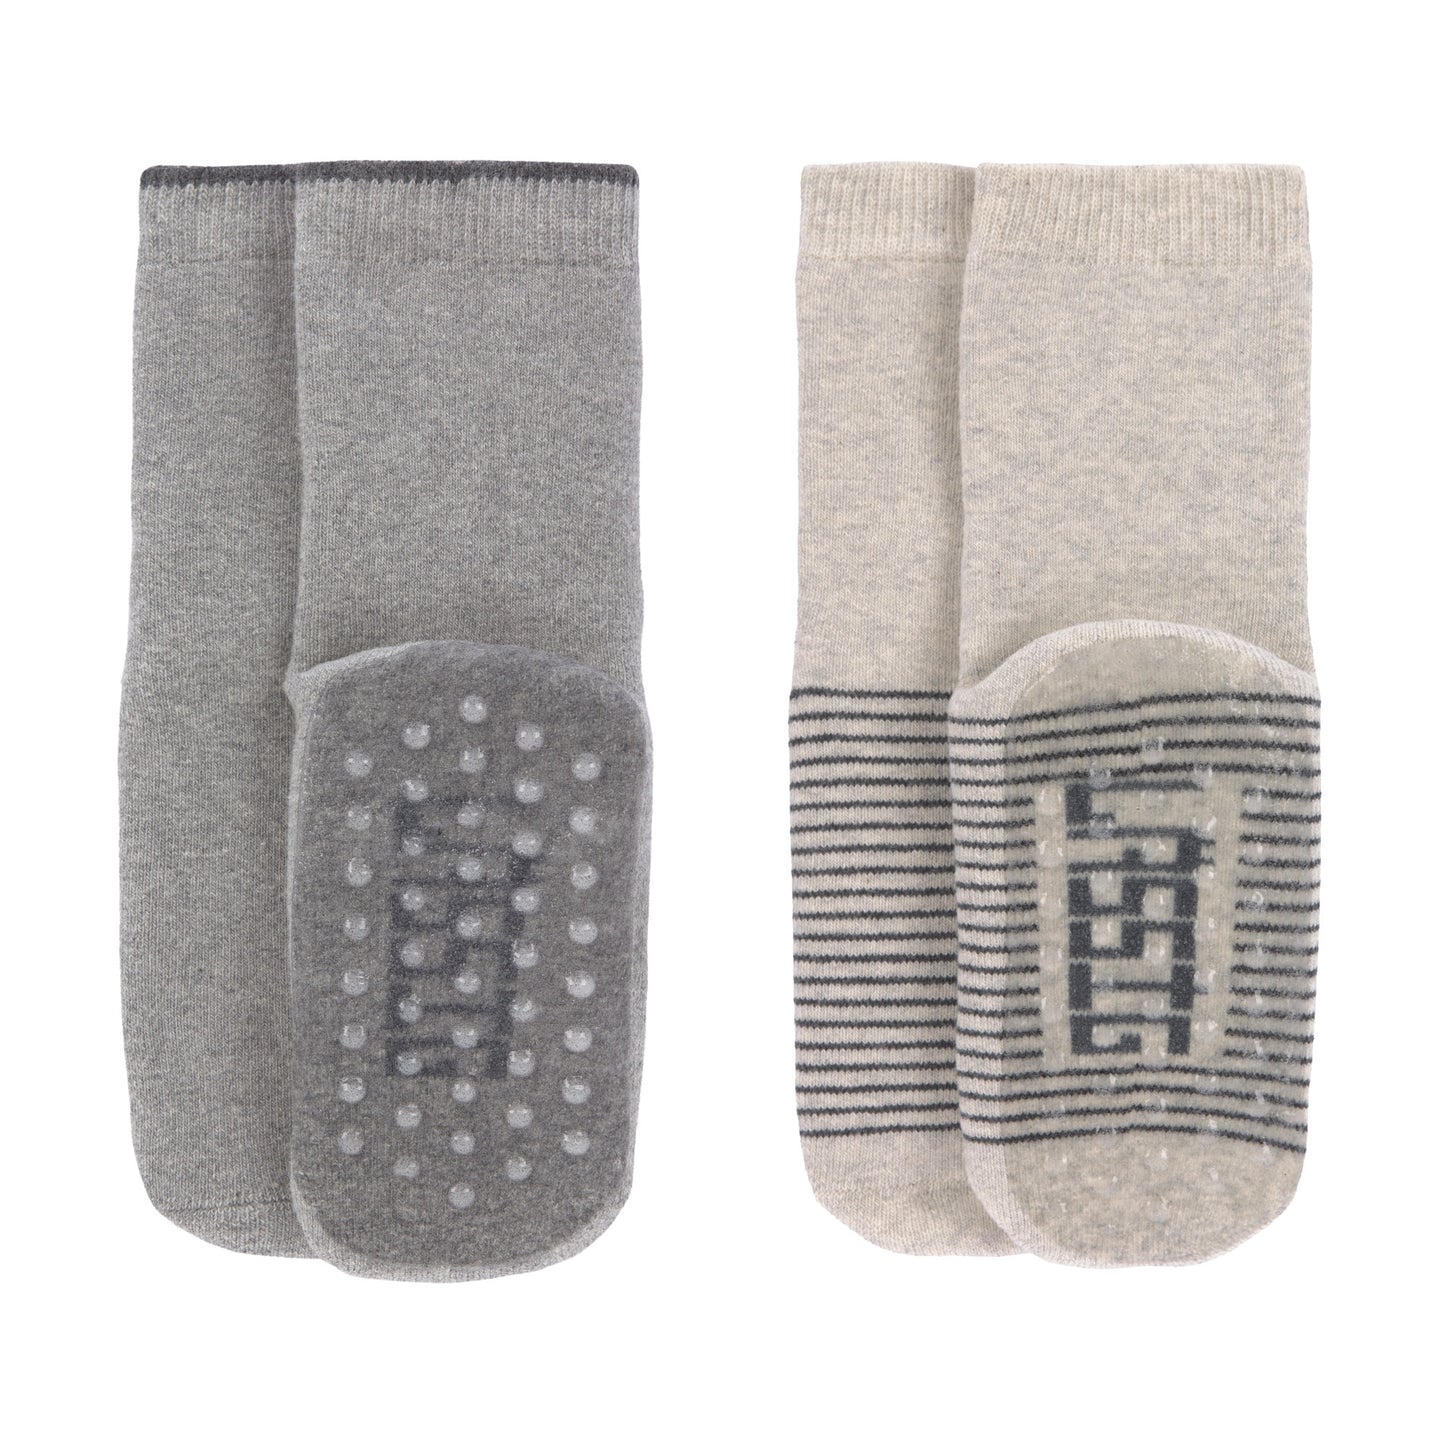 Antirutsch-Socken: Anti-slip Socks 2 pcs.